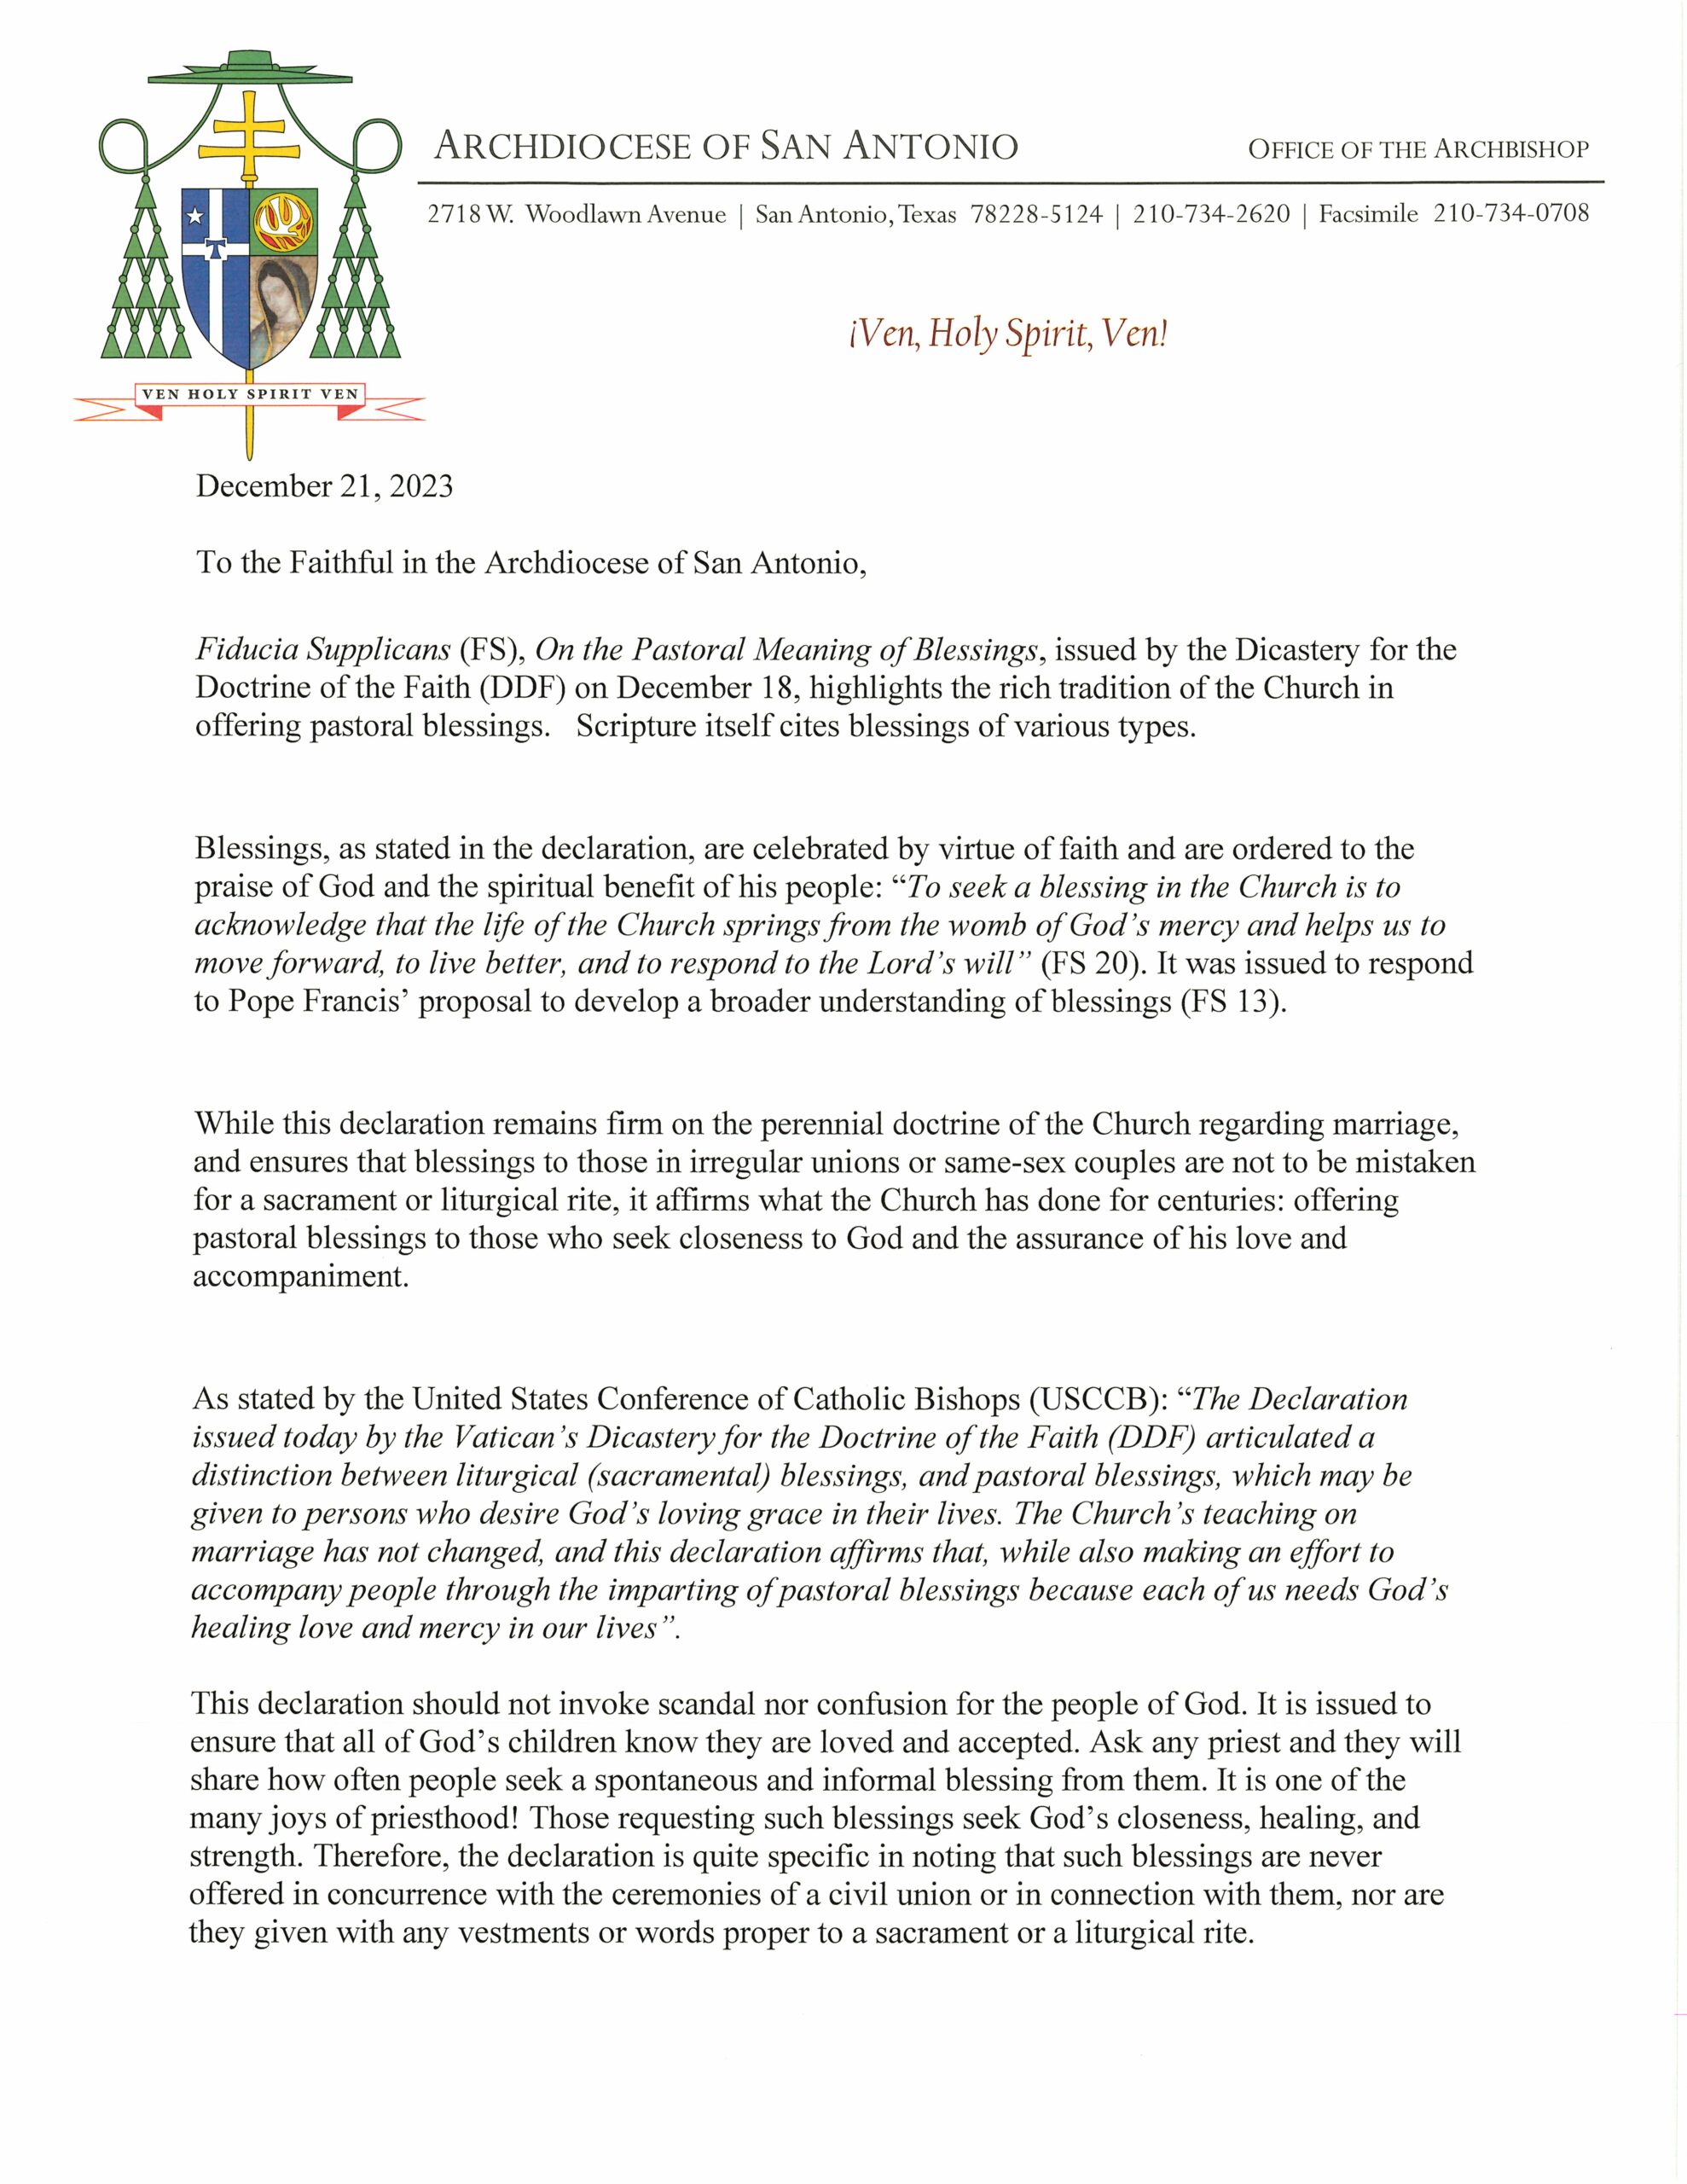 Archbishop Gustavo statement on Fiducia Supplicans (FS)